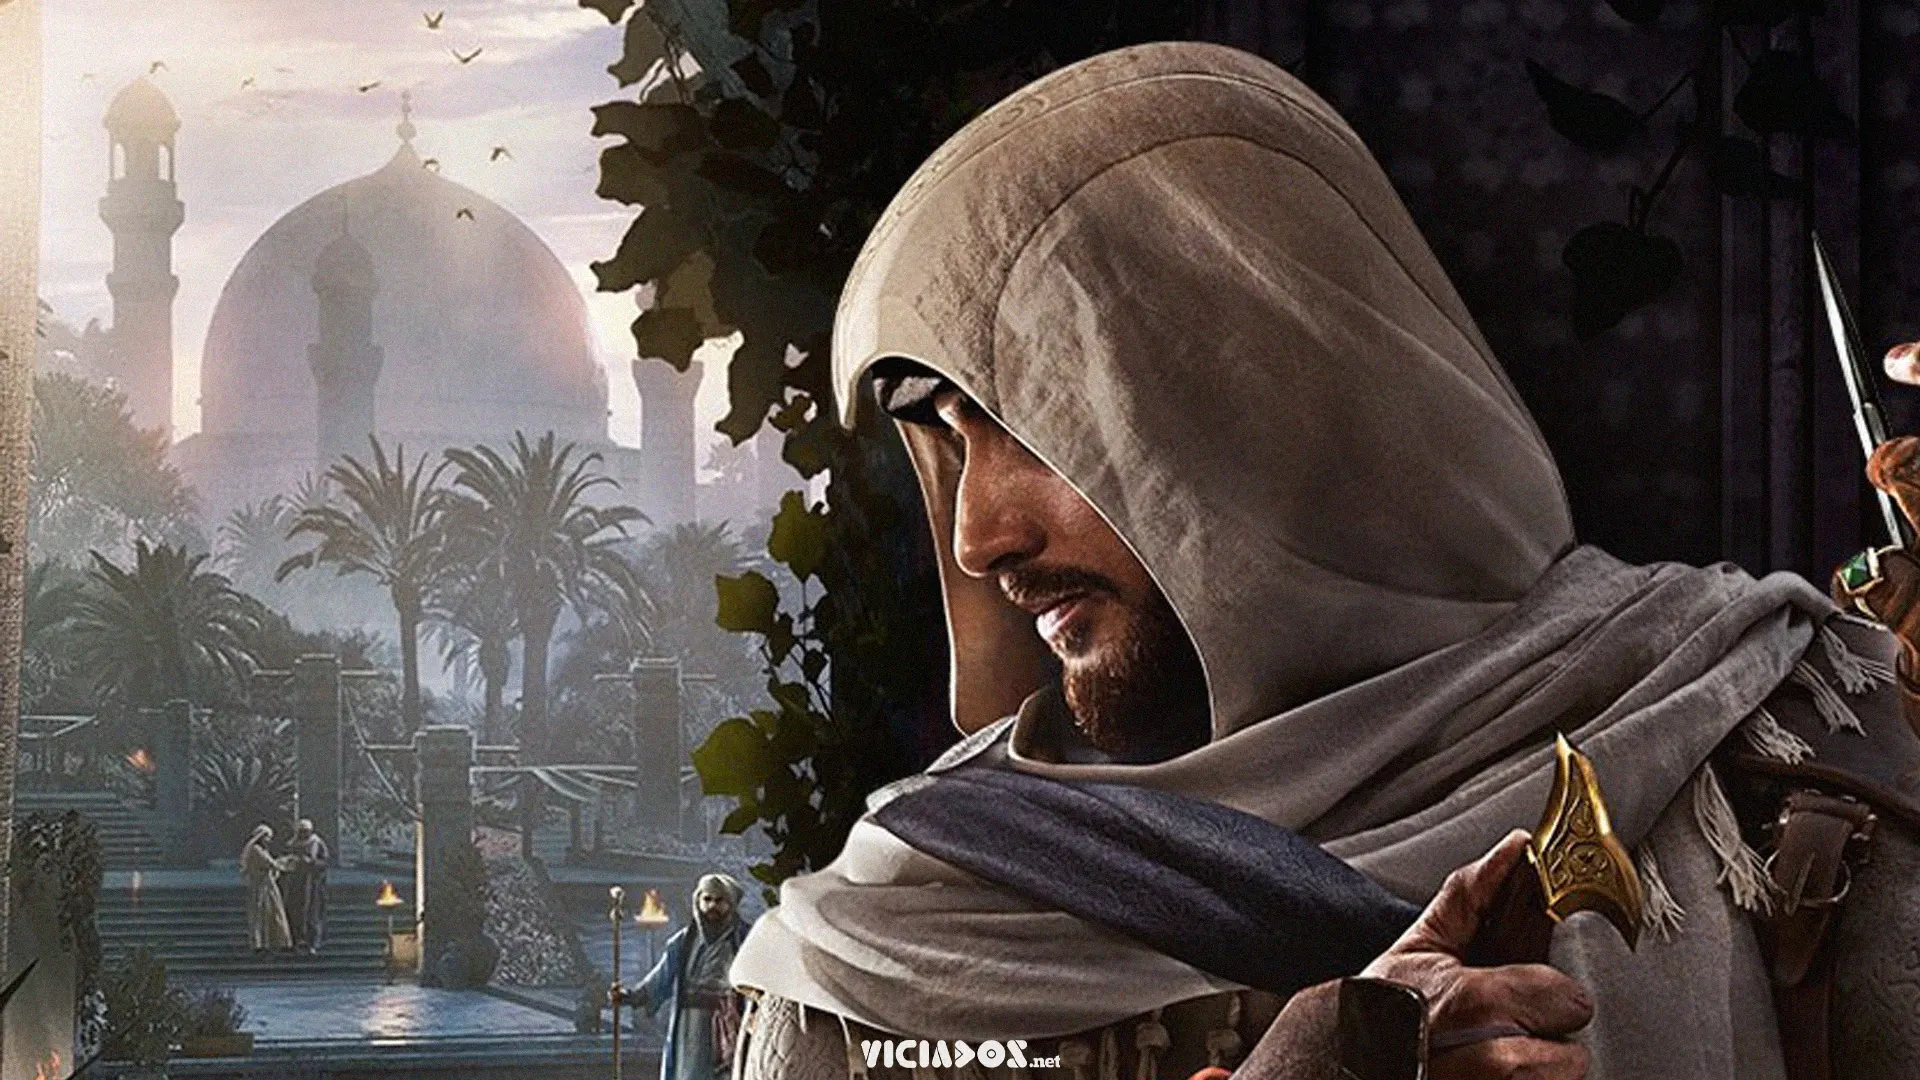 Assassin's Creed: Mirage | Vaza capa e imagens antes do evento da Ubisoft 2023 Viciados